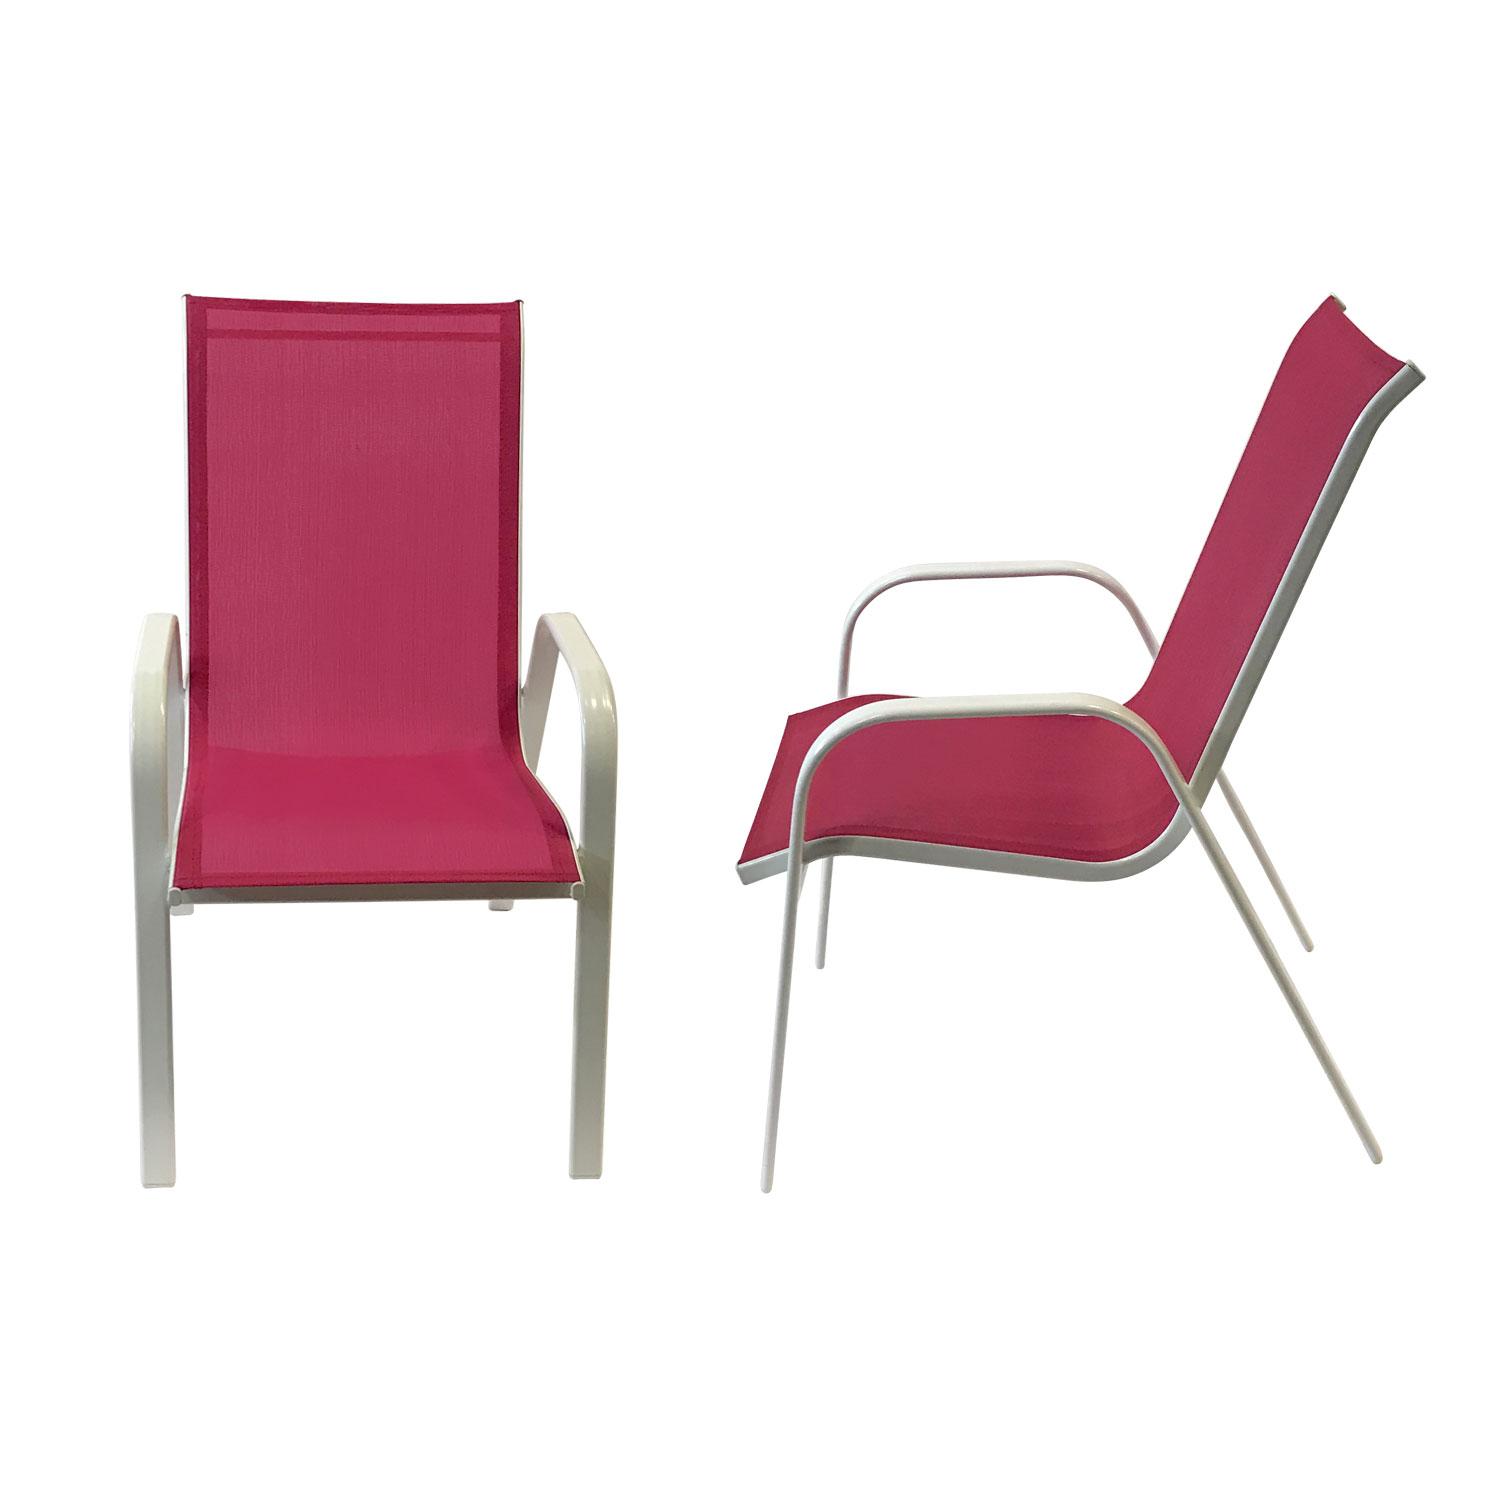 Lote de 6 sillas MARBELLA en textileneo rosa - aluminio blanco